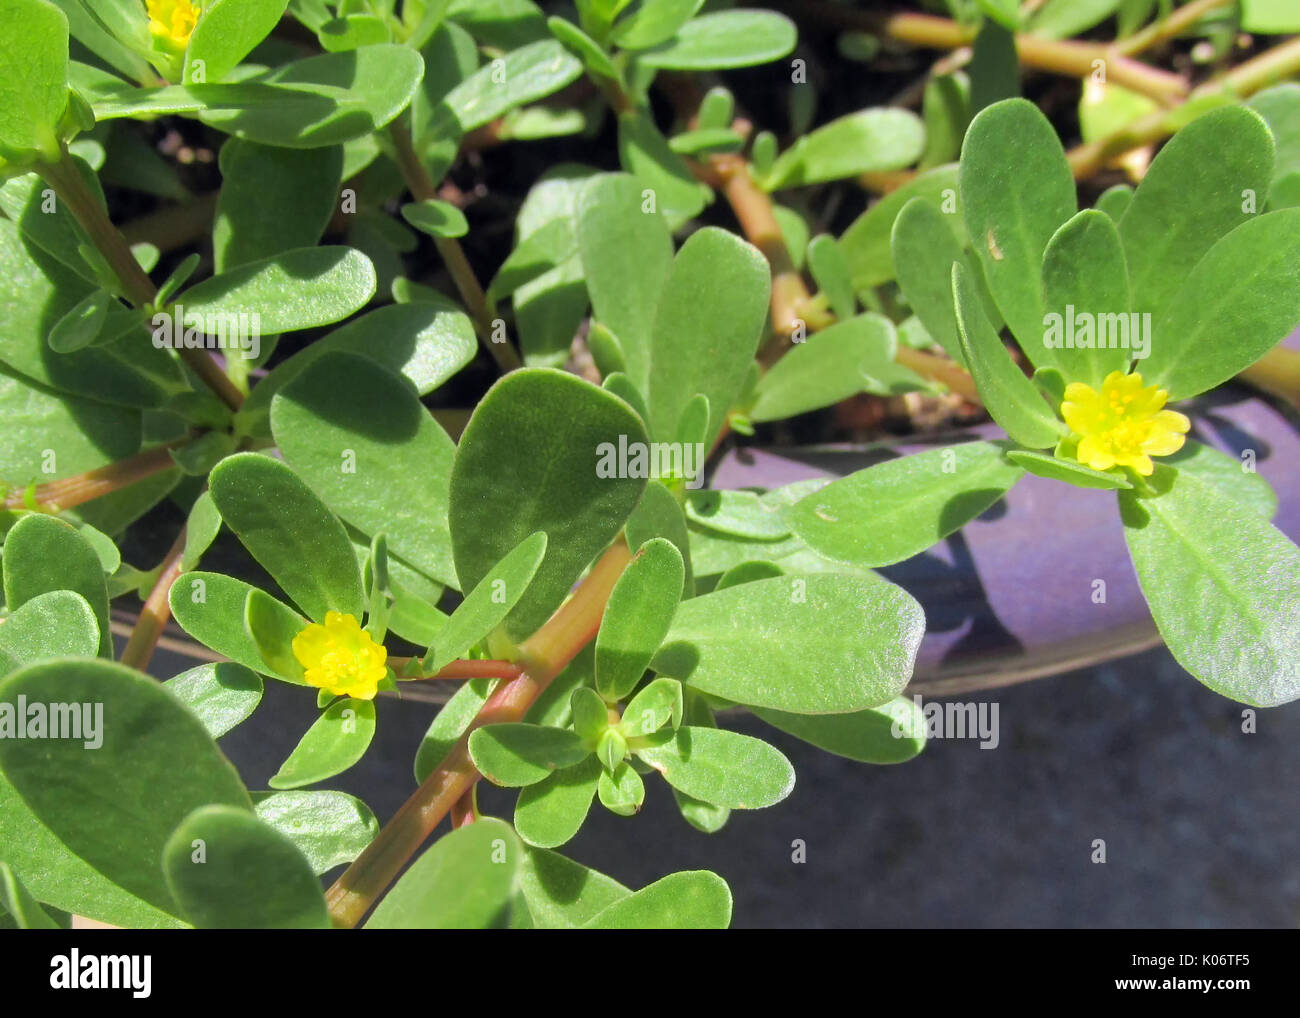 Eine Nahaufnahme der Gemeinsamen Portulak (Portulaca Oleracea) mit Schwerpunkt auf den Blättern und kleinen gelben Blüten. Stockfoto